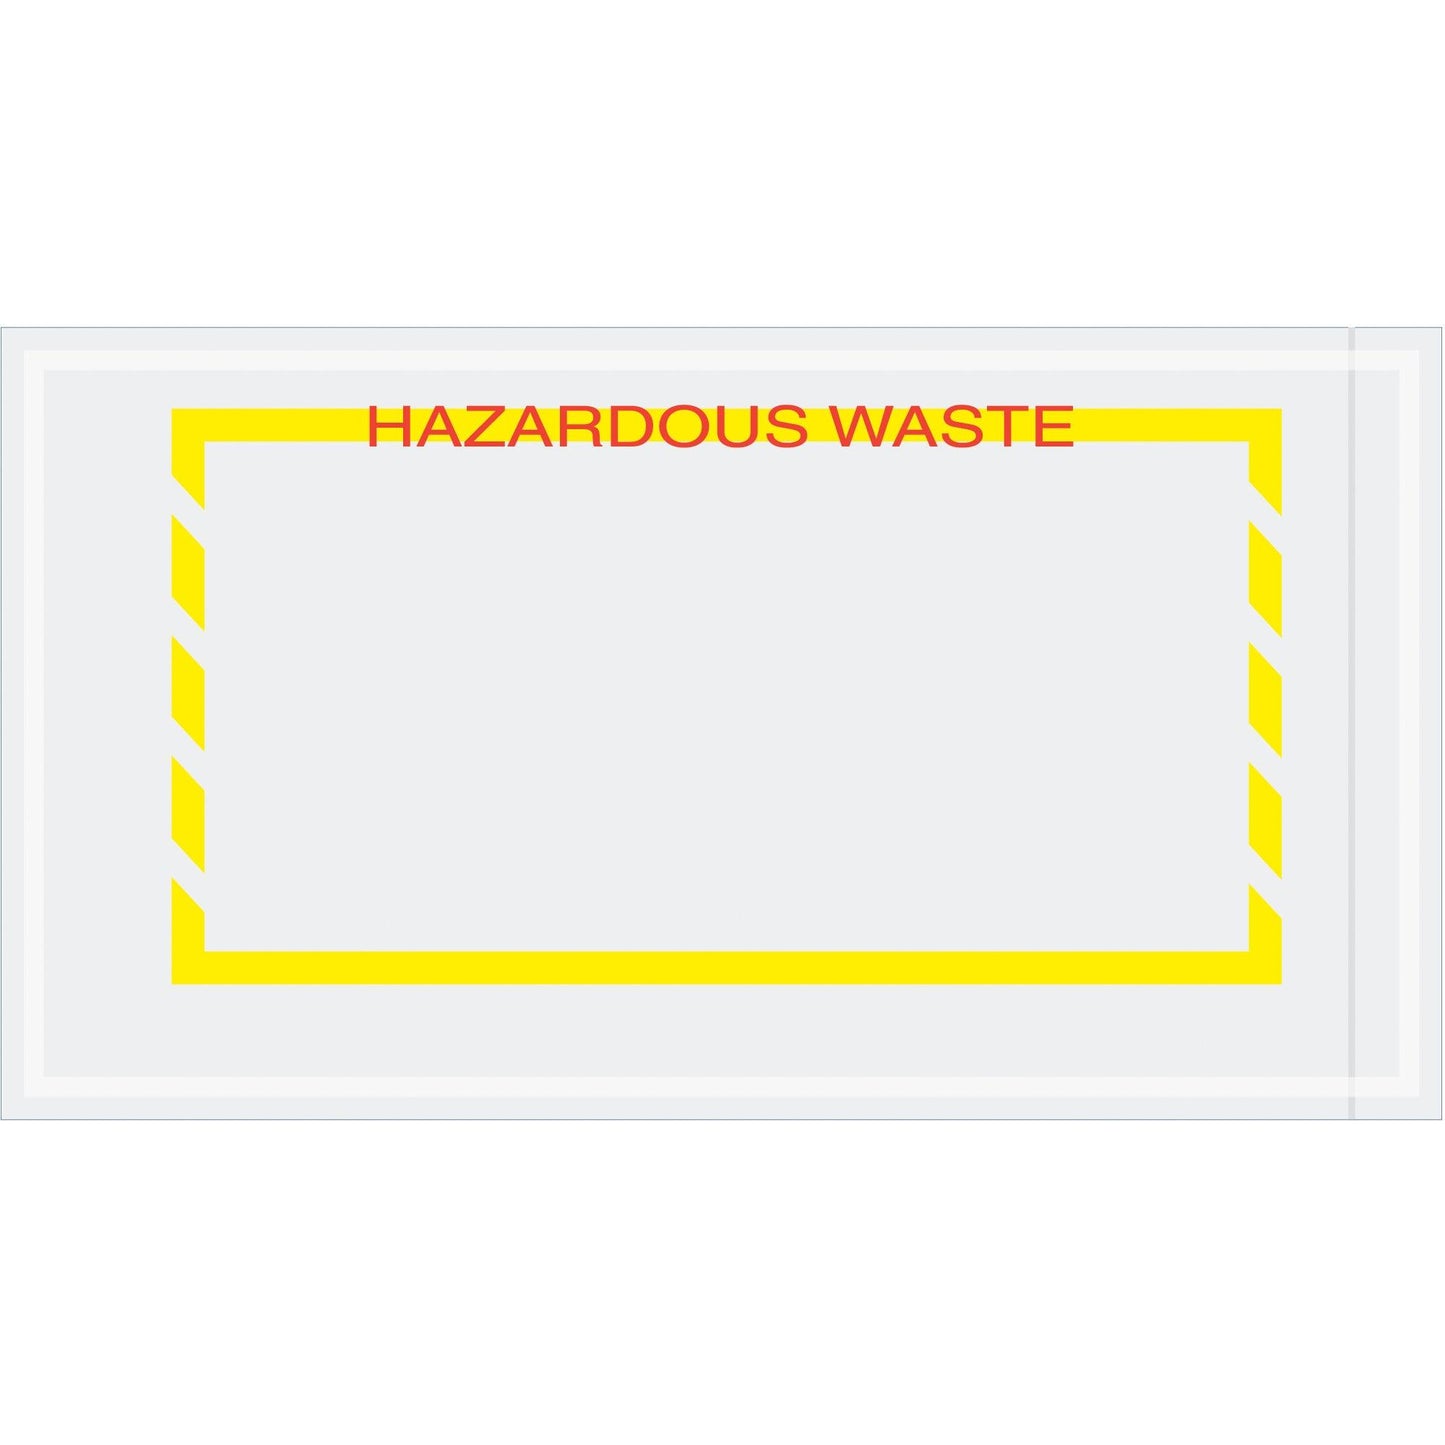 5 1/2 x 10" Yellow Border "Hazardous Waste" Document Envelopes - PL482